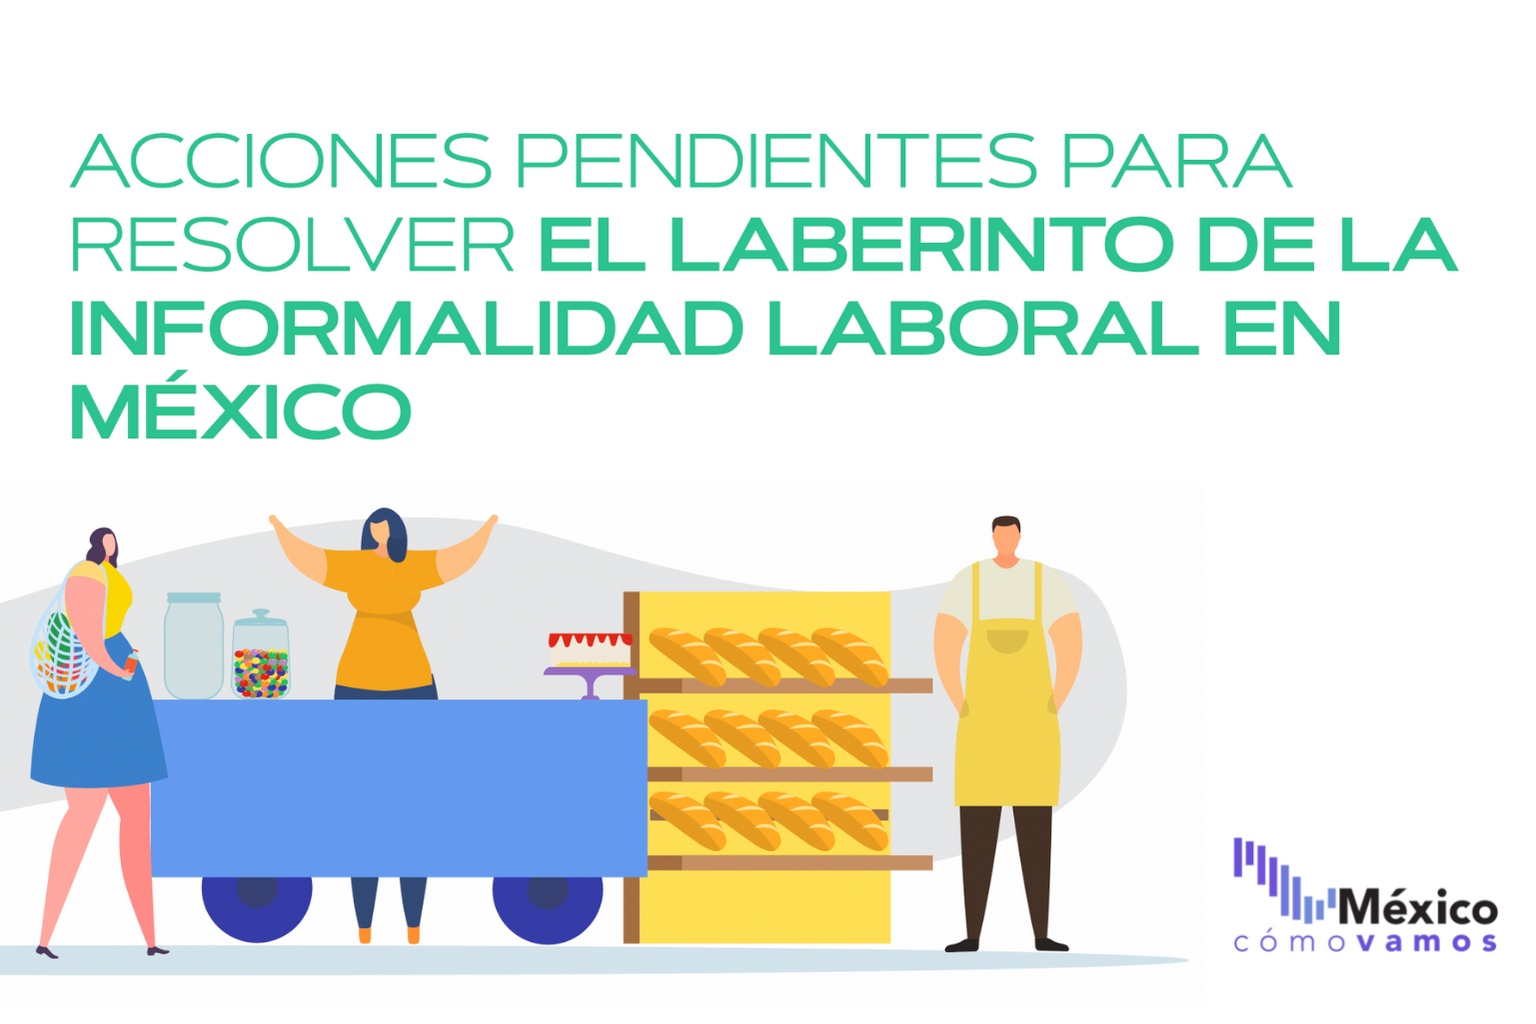 Acciones pendientes para resolver el laberinto de la informalidad laboral en México